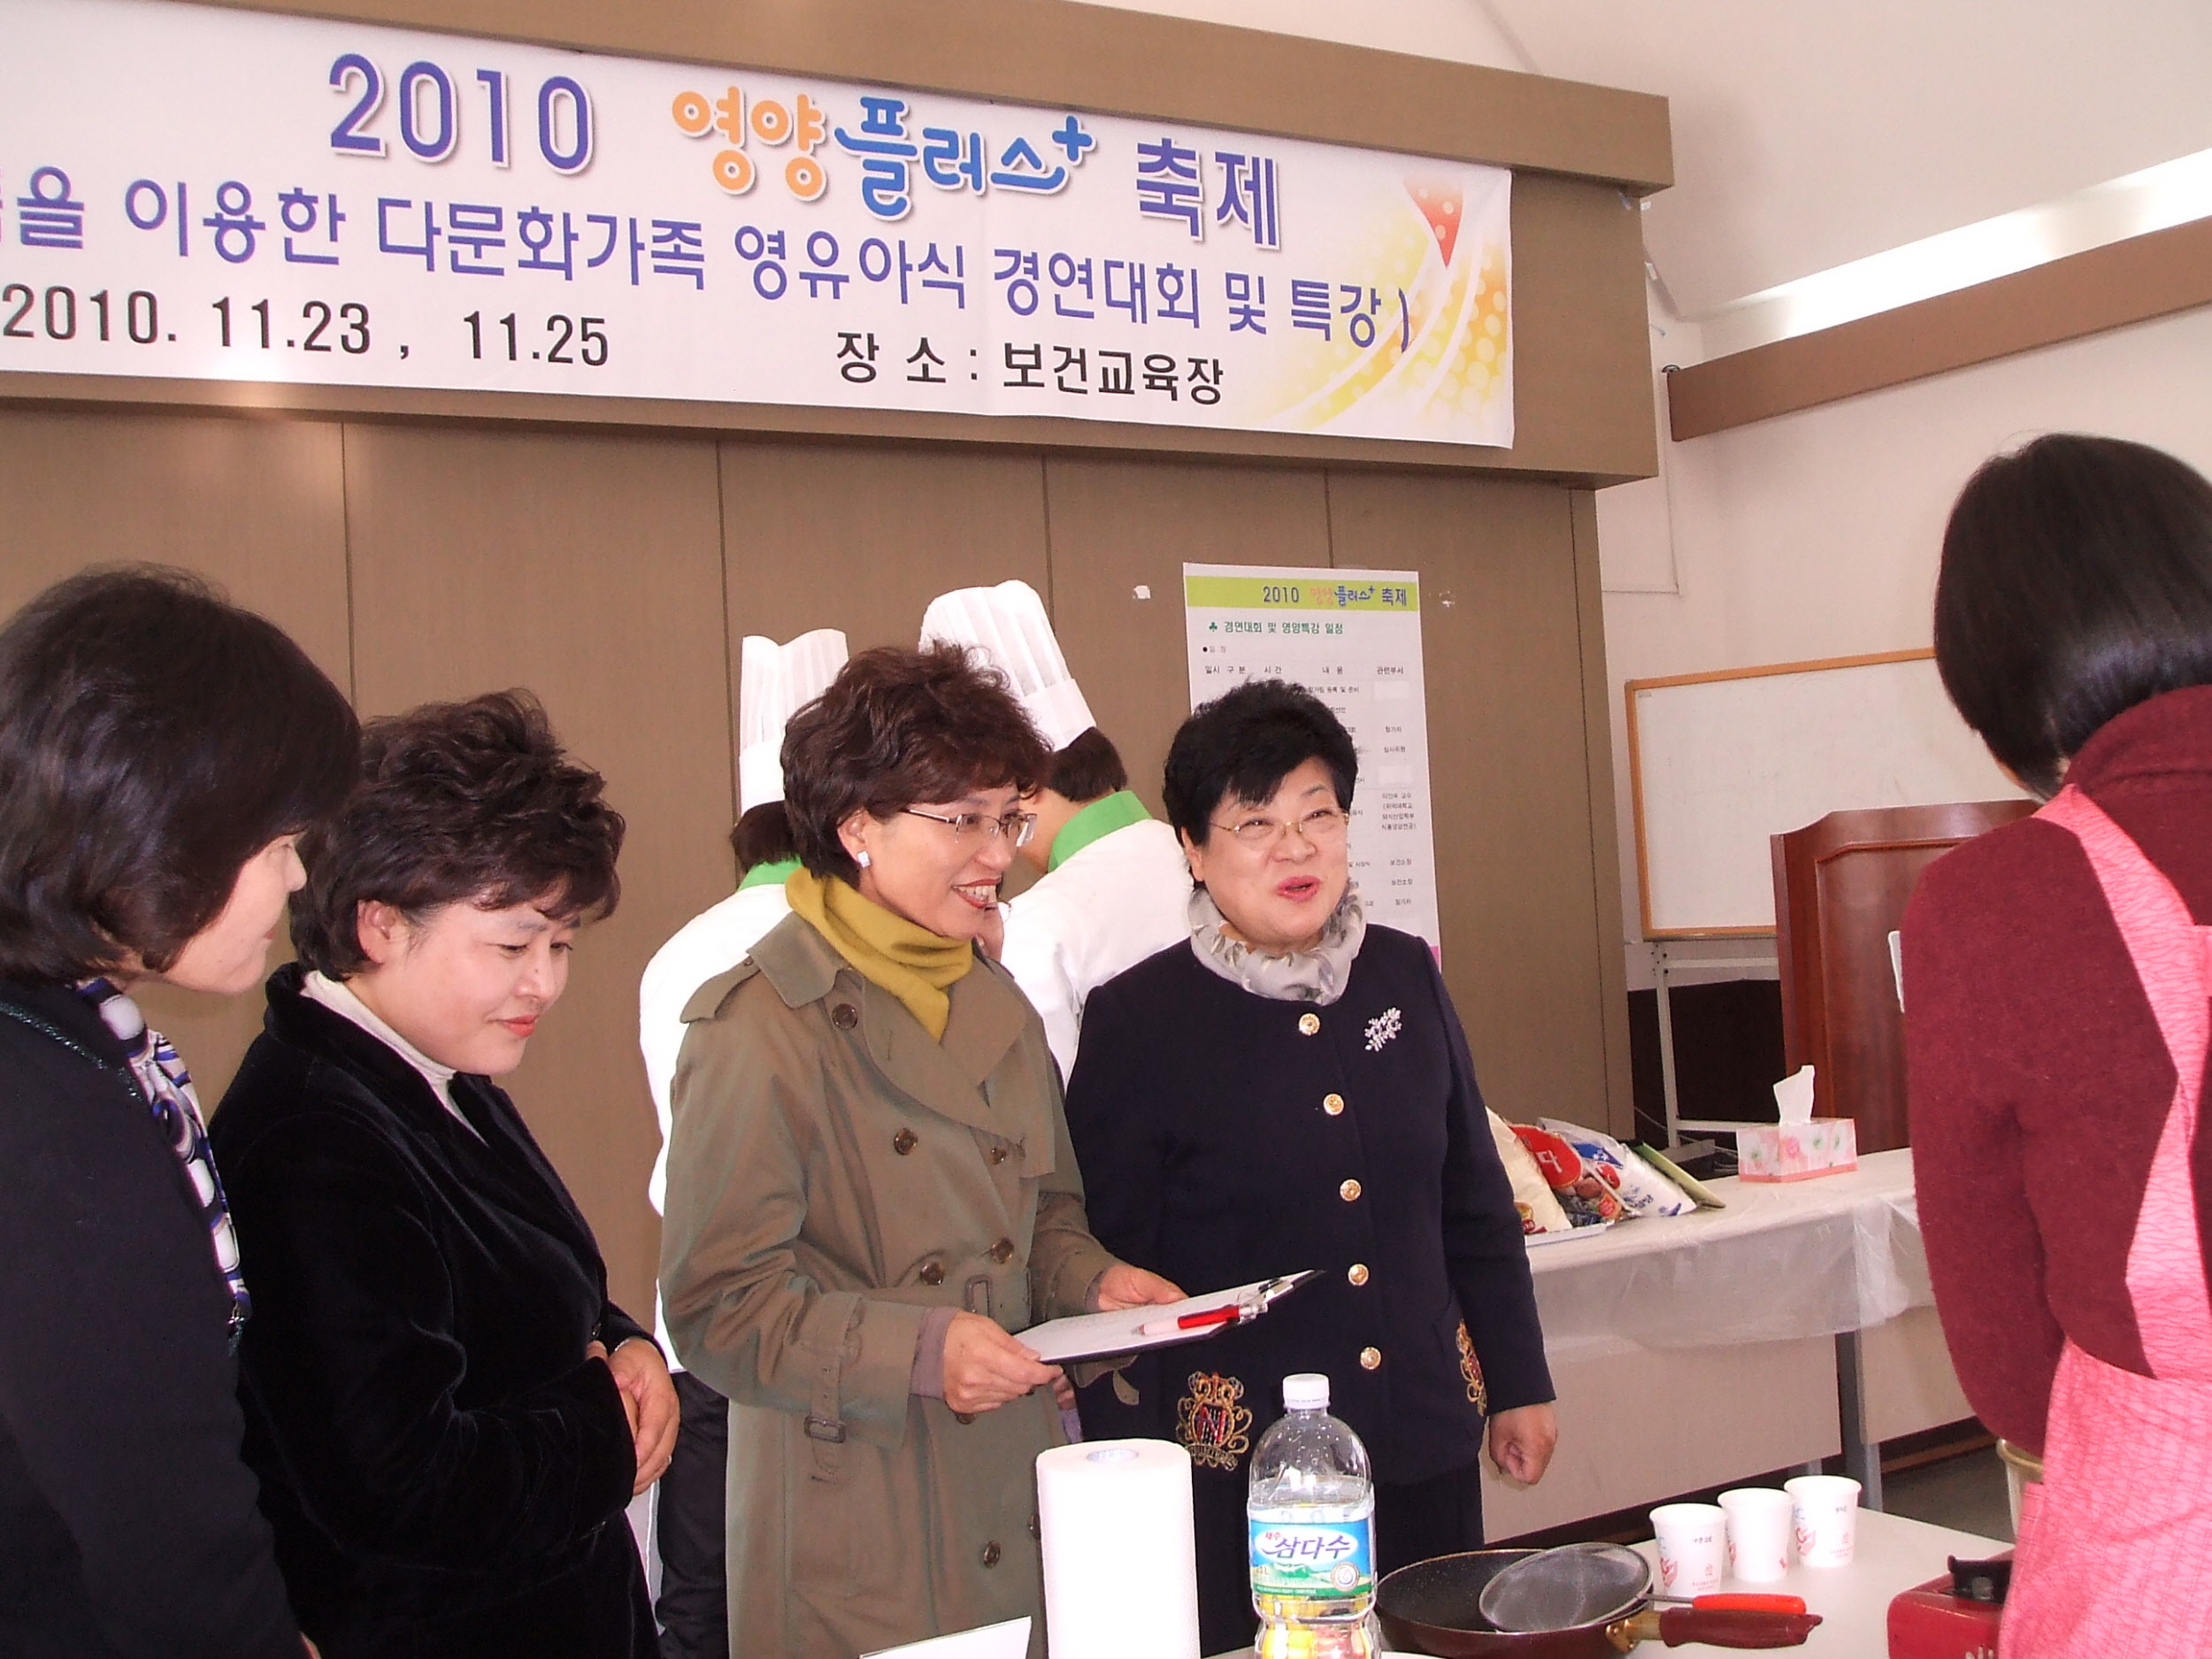 2010 영양플러스 페스티벌 개최